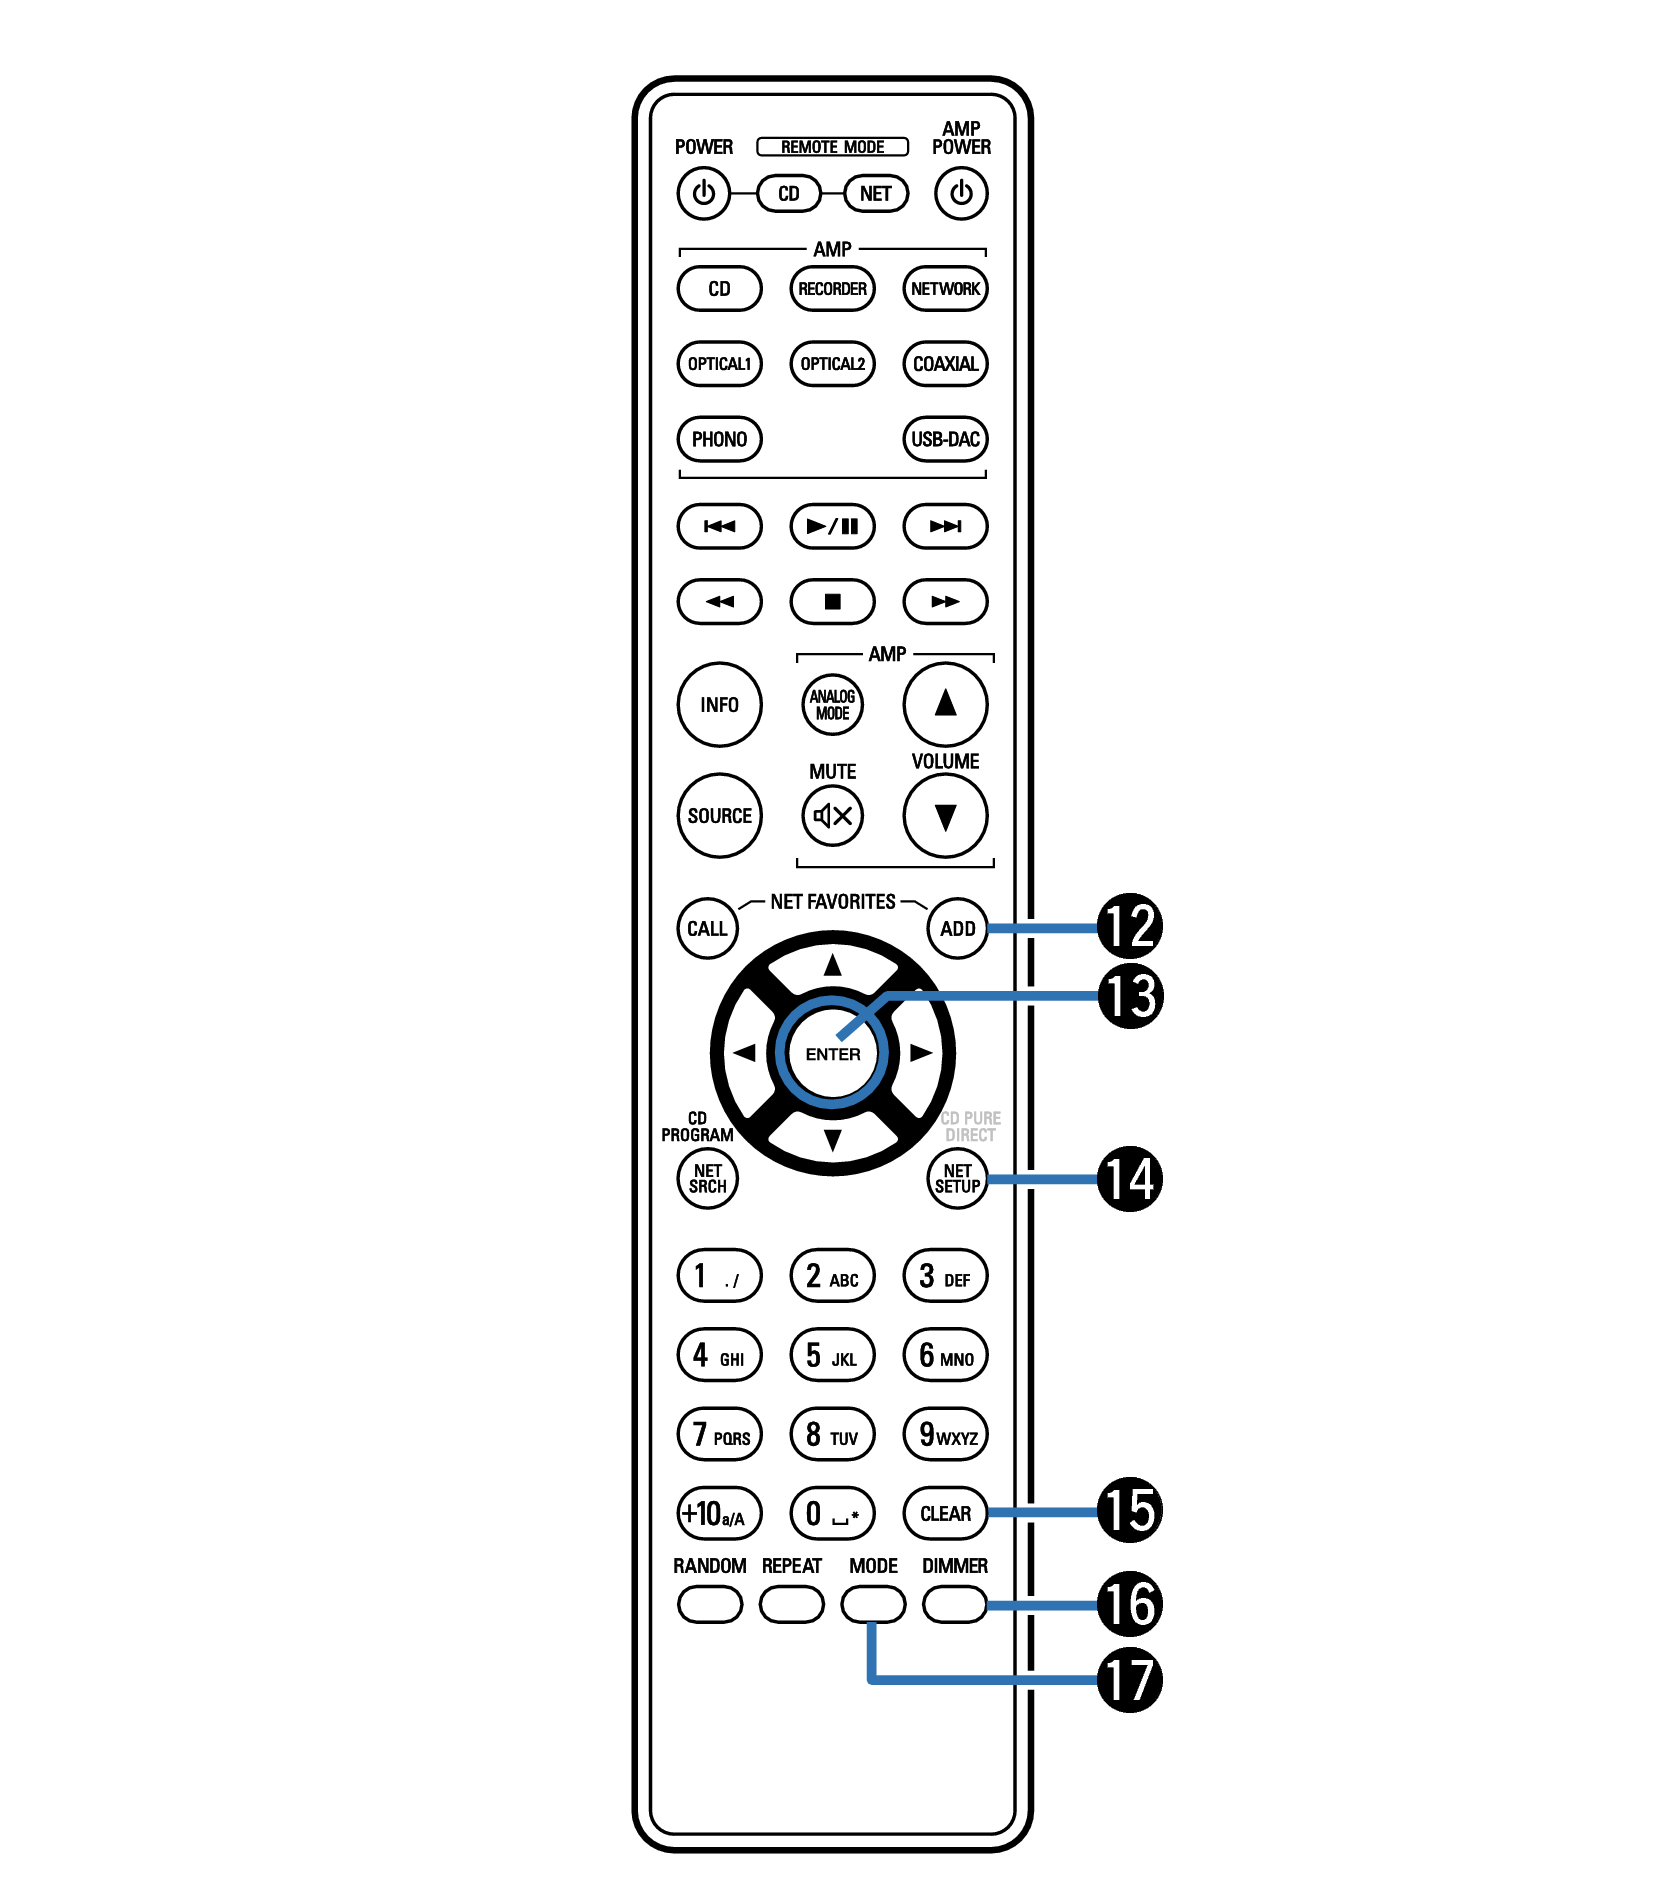 Remote control unit DCD-1600NE